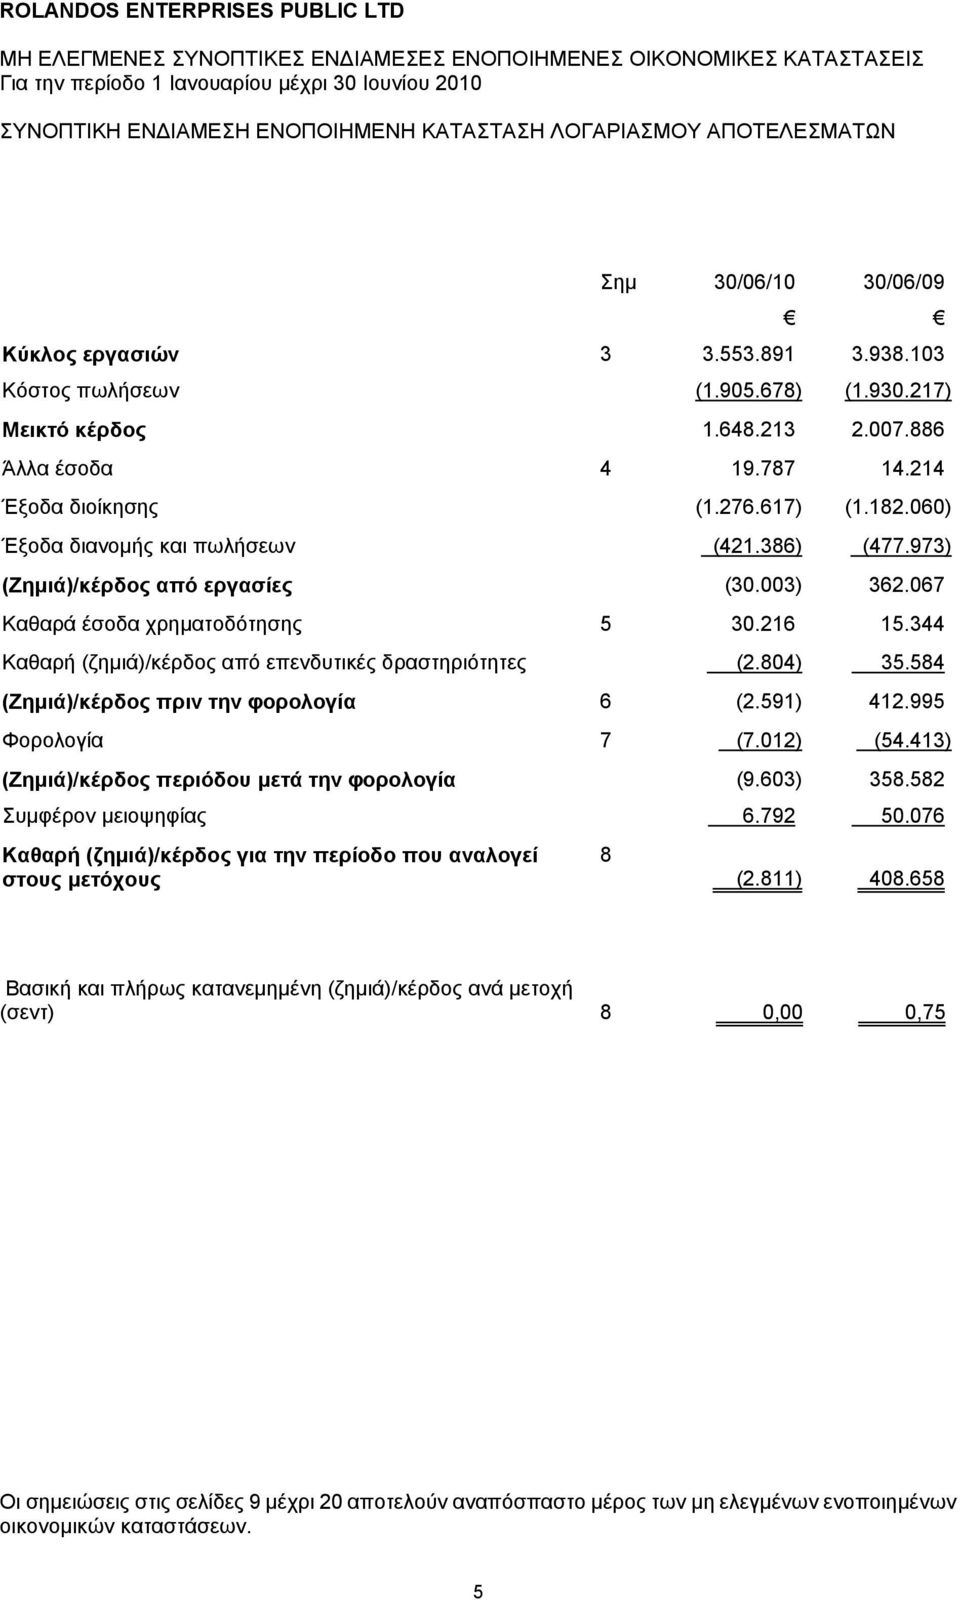 973) (Ζημιά)/κέρδος από εργασίες (30.003) 362.067 Καθαρά έσοδα χρηματοδότησης 5 30.216 15.344 Καθαρή (ζημιά)/κέρδος από επενδυτικές δραστηριότητες (2.804) 35.